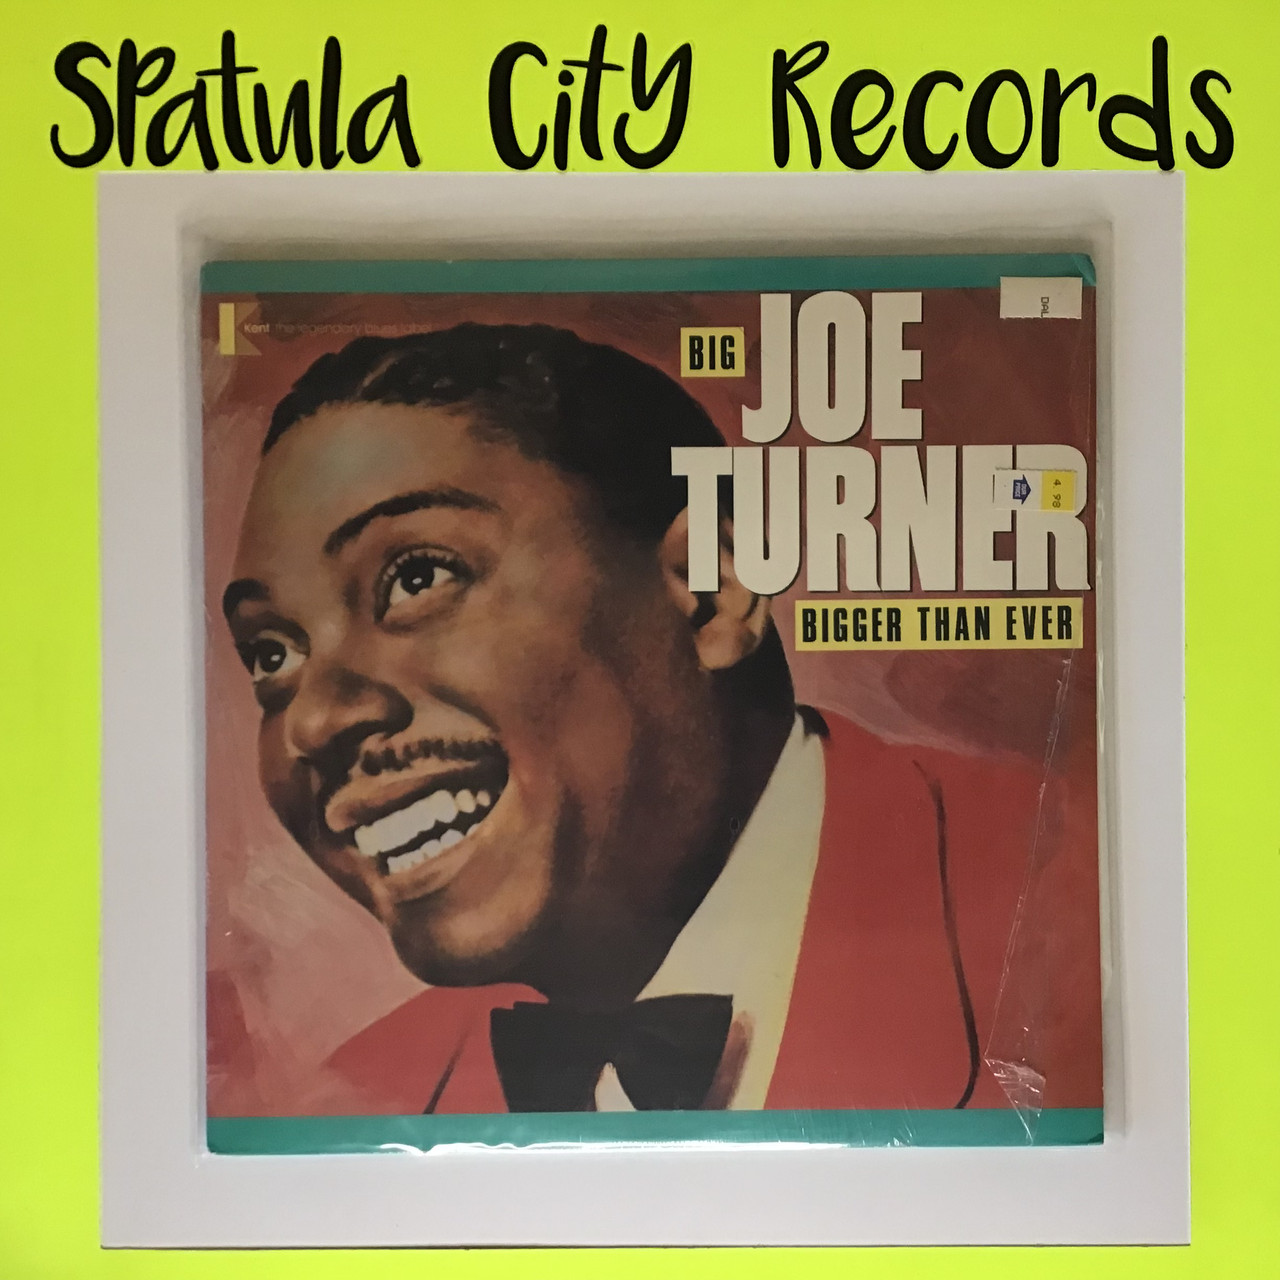 Big Joe Turner - Bigger than ever - vinyl record album LP